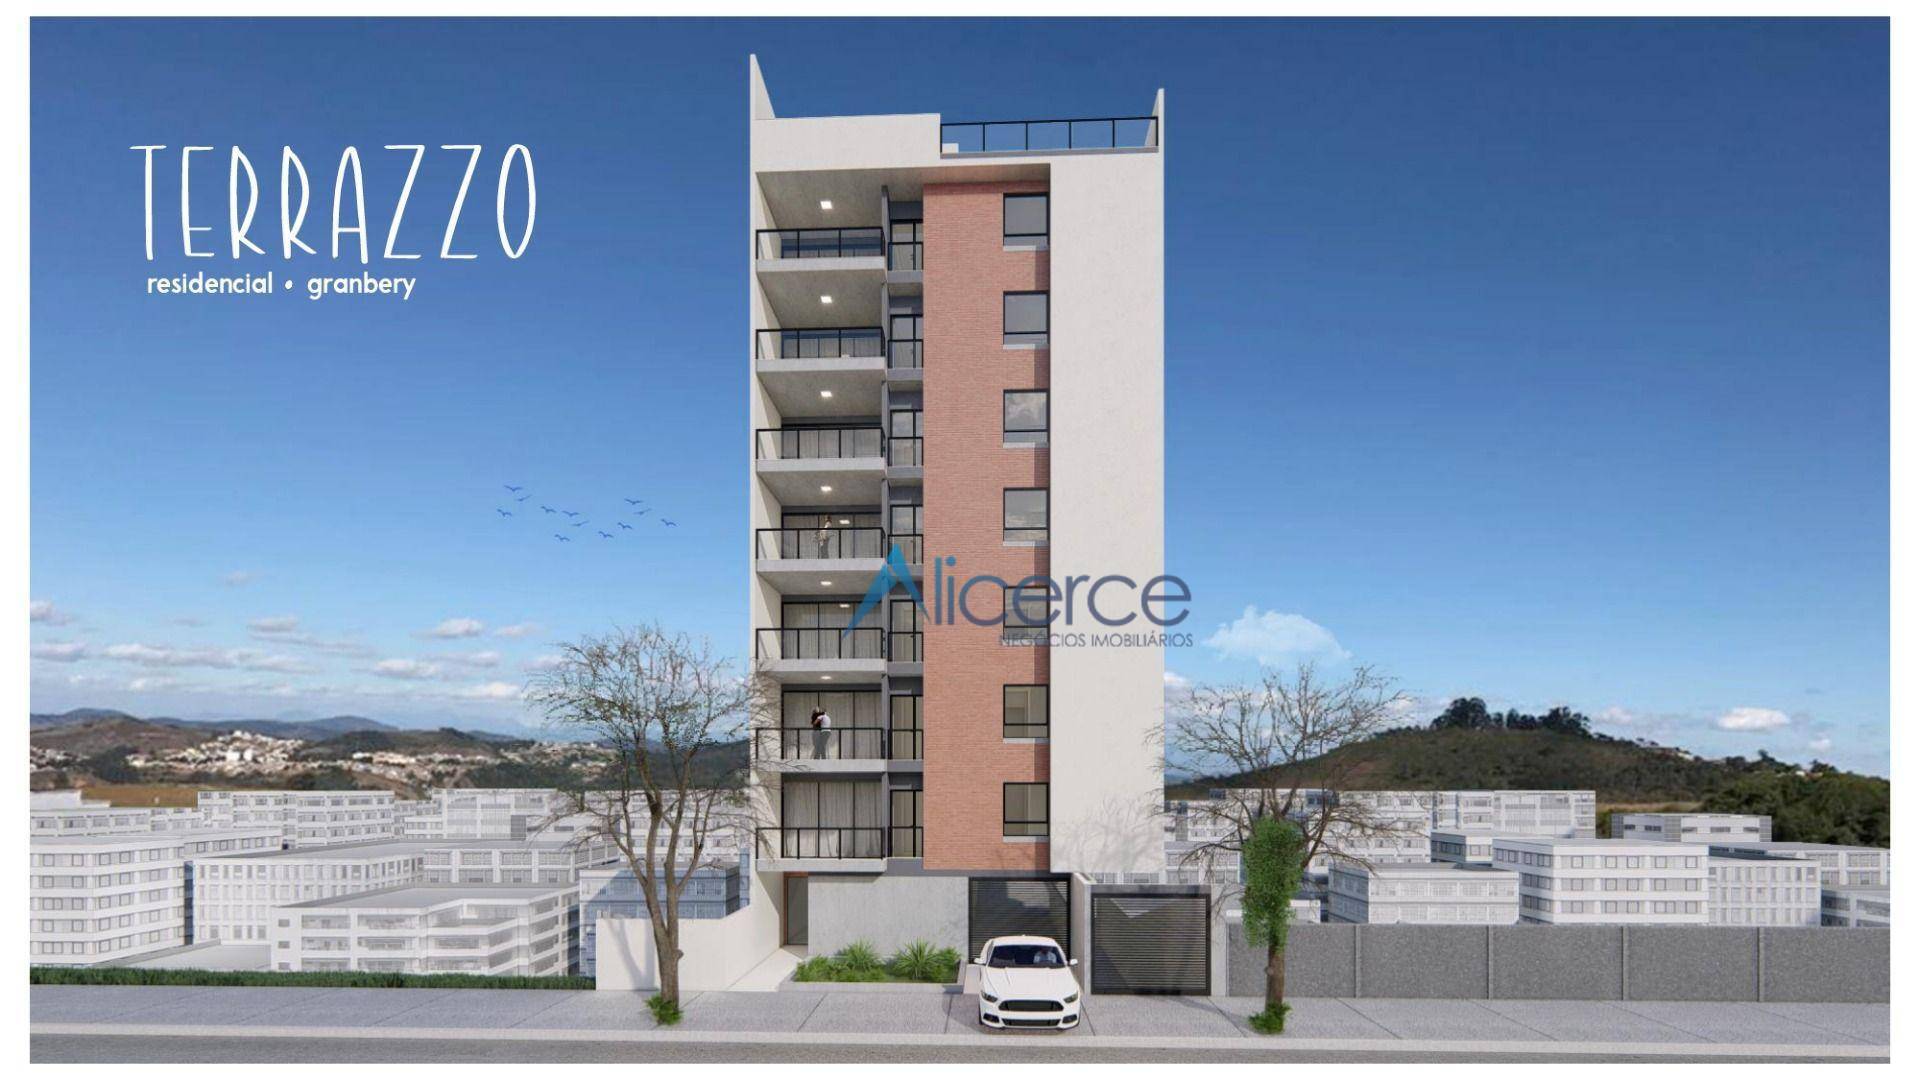 Apartamento com 3 dormitórios à venda, 80 m² por R$ 430.000,00 - Granbery - Juiz de Fora/MG